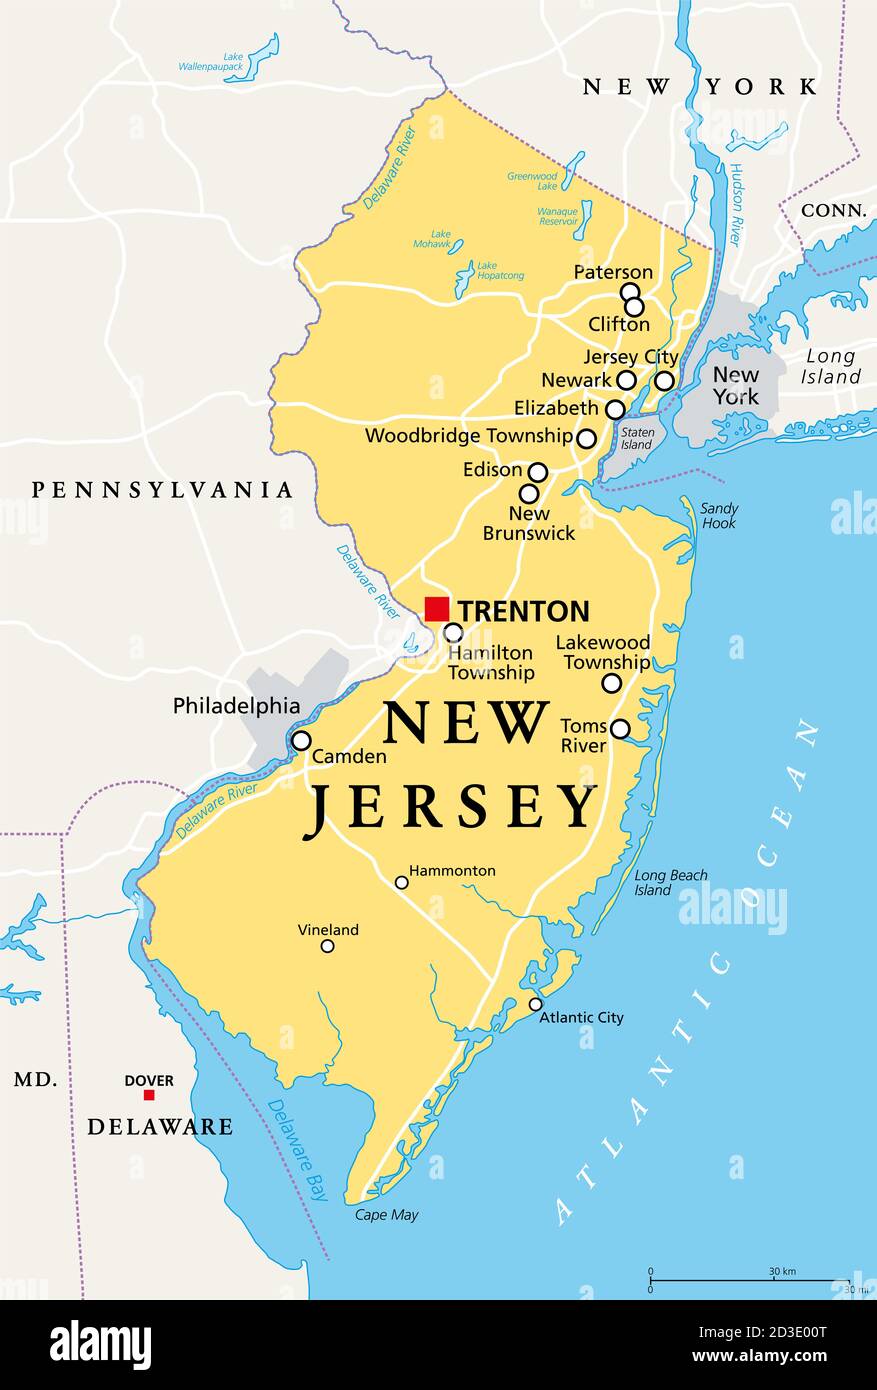 New Jersey, NJ, politische Landkarte mit der Hauptstadt Trenton. Staat in der Mid-Atlantic Region im Nordosten der Vereinigten Staaten von Amerika. The Garden State. Stockfoto